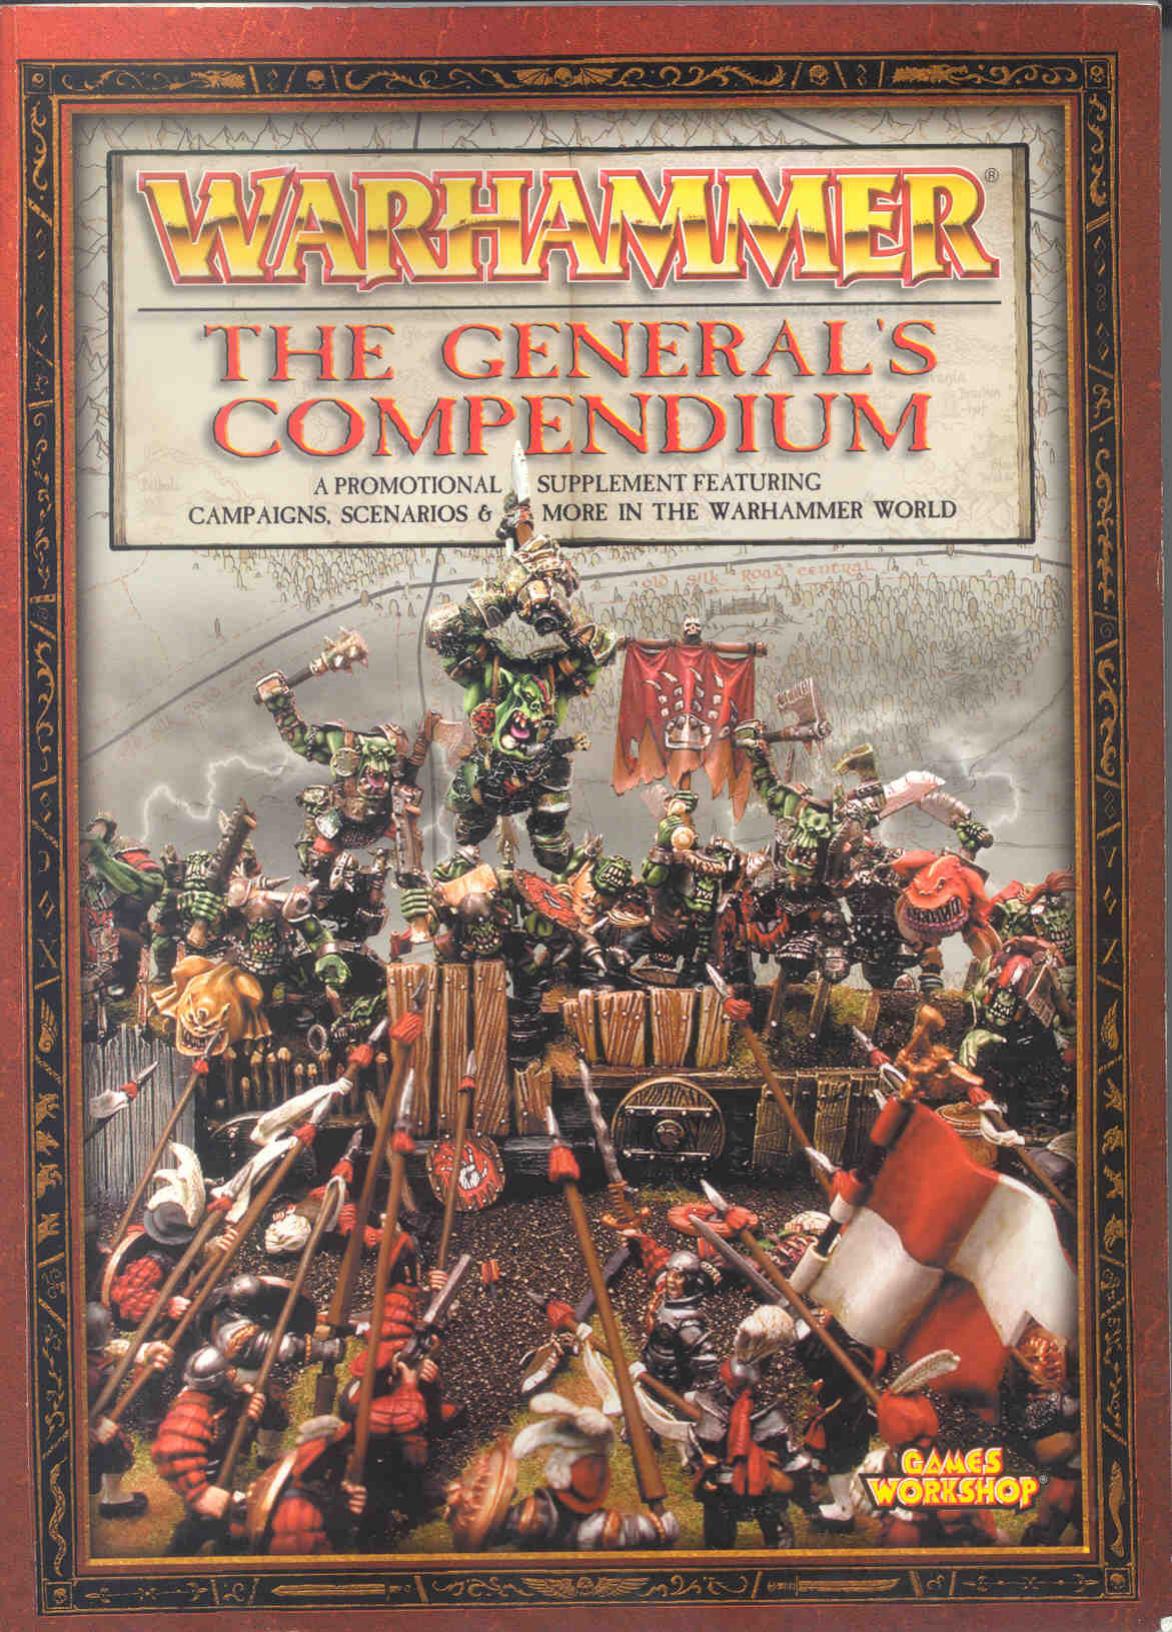 General's Compendium